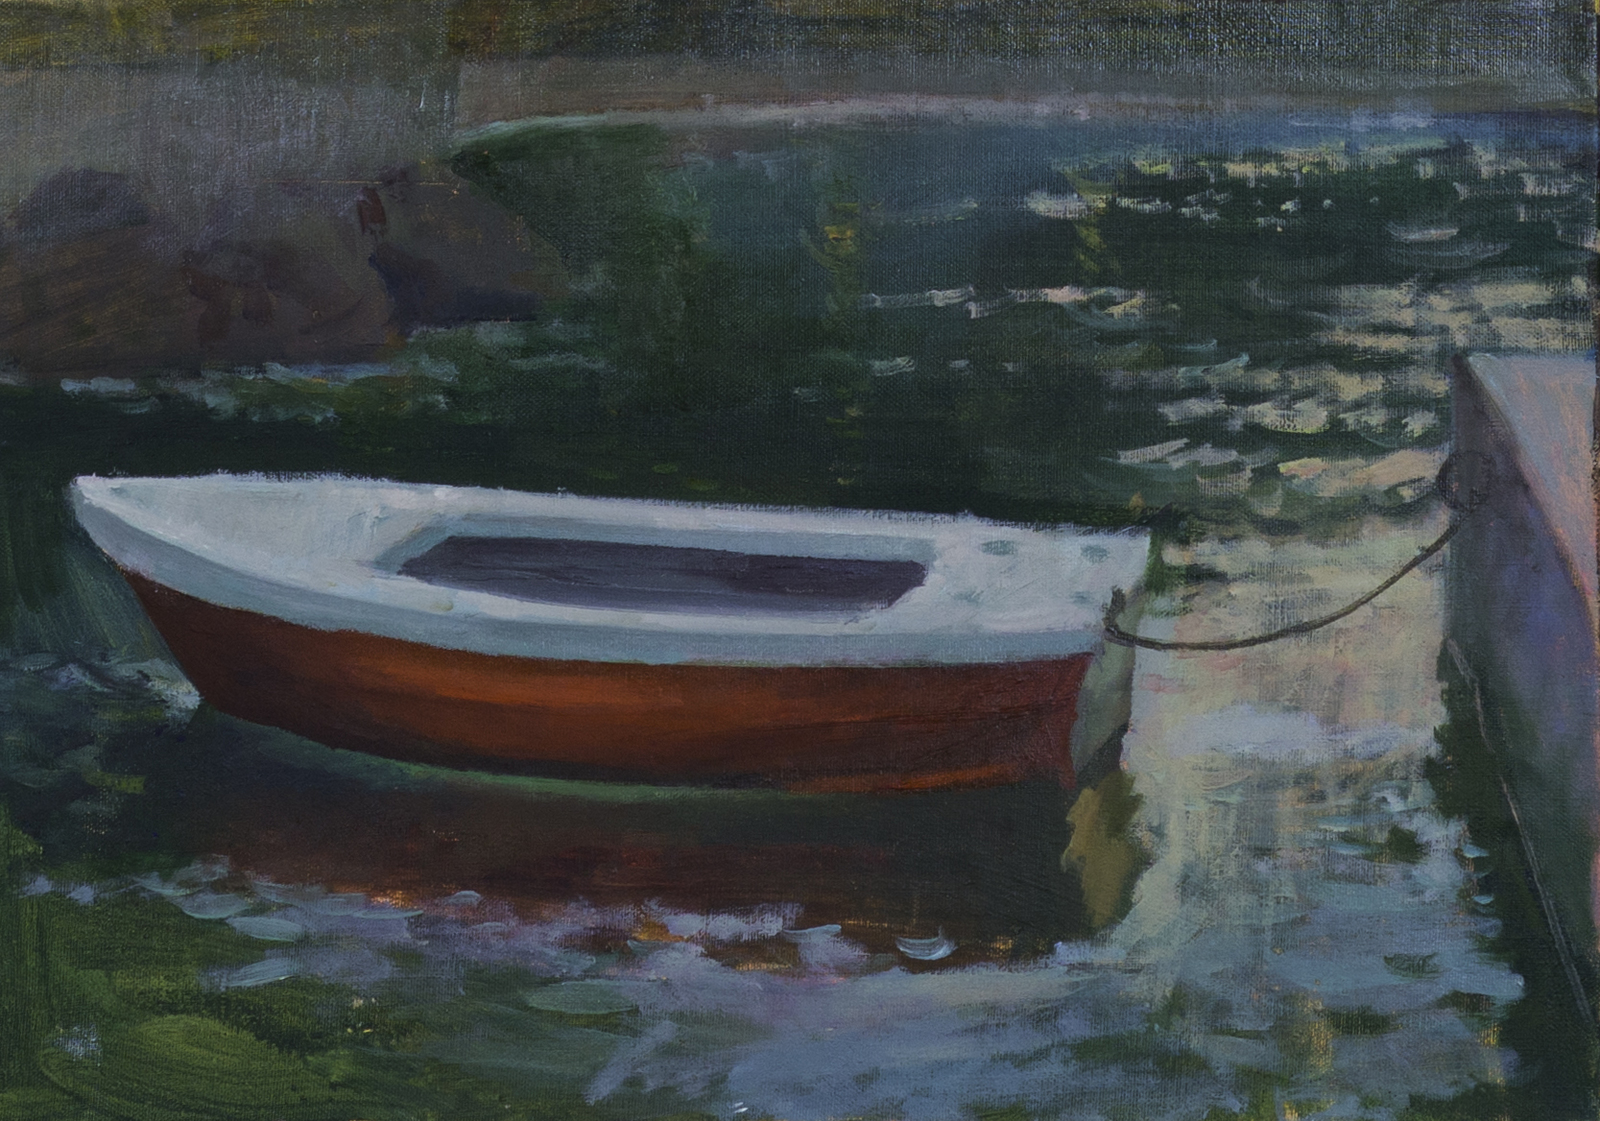 Живопись с красной лодкой. Лодка красного цвета картина. Картины современных художников реалистов OILYOIL. Пелла красная лодка. Oilyoil